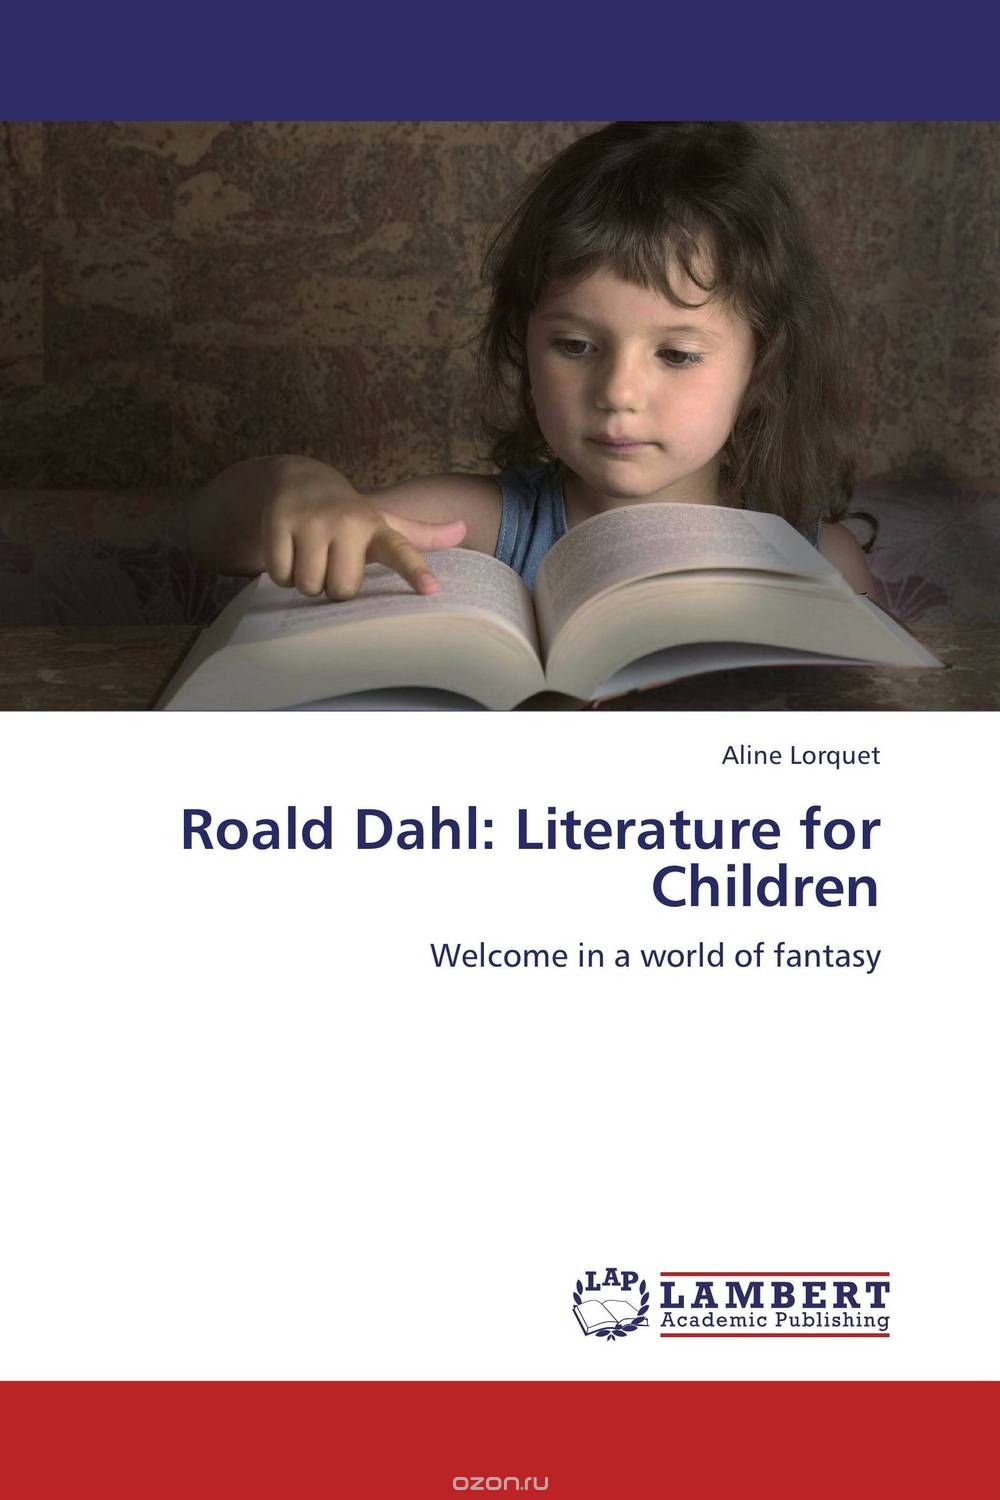 Скачать книгу "Roald Dahl: Literature for Children"